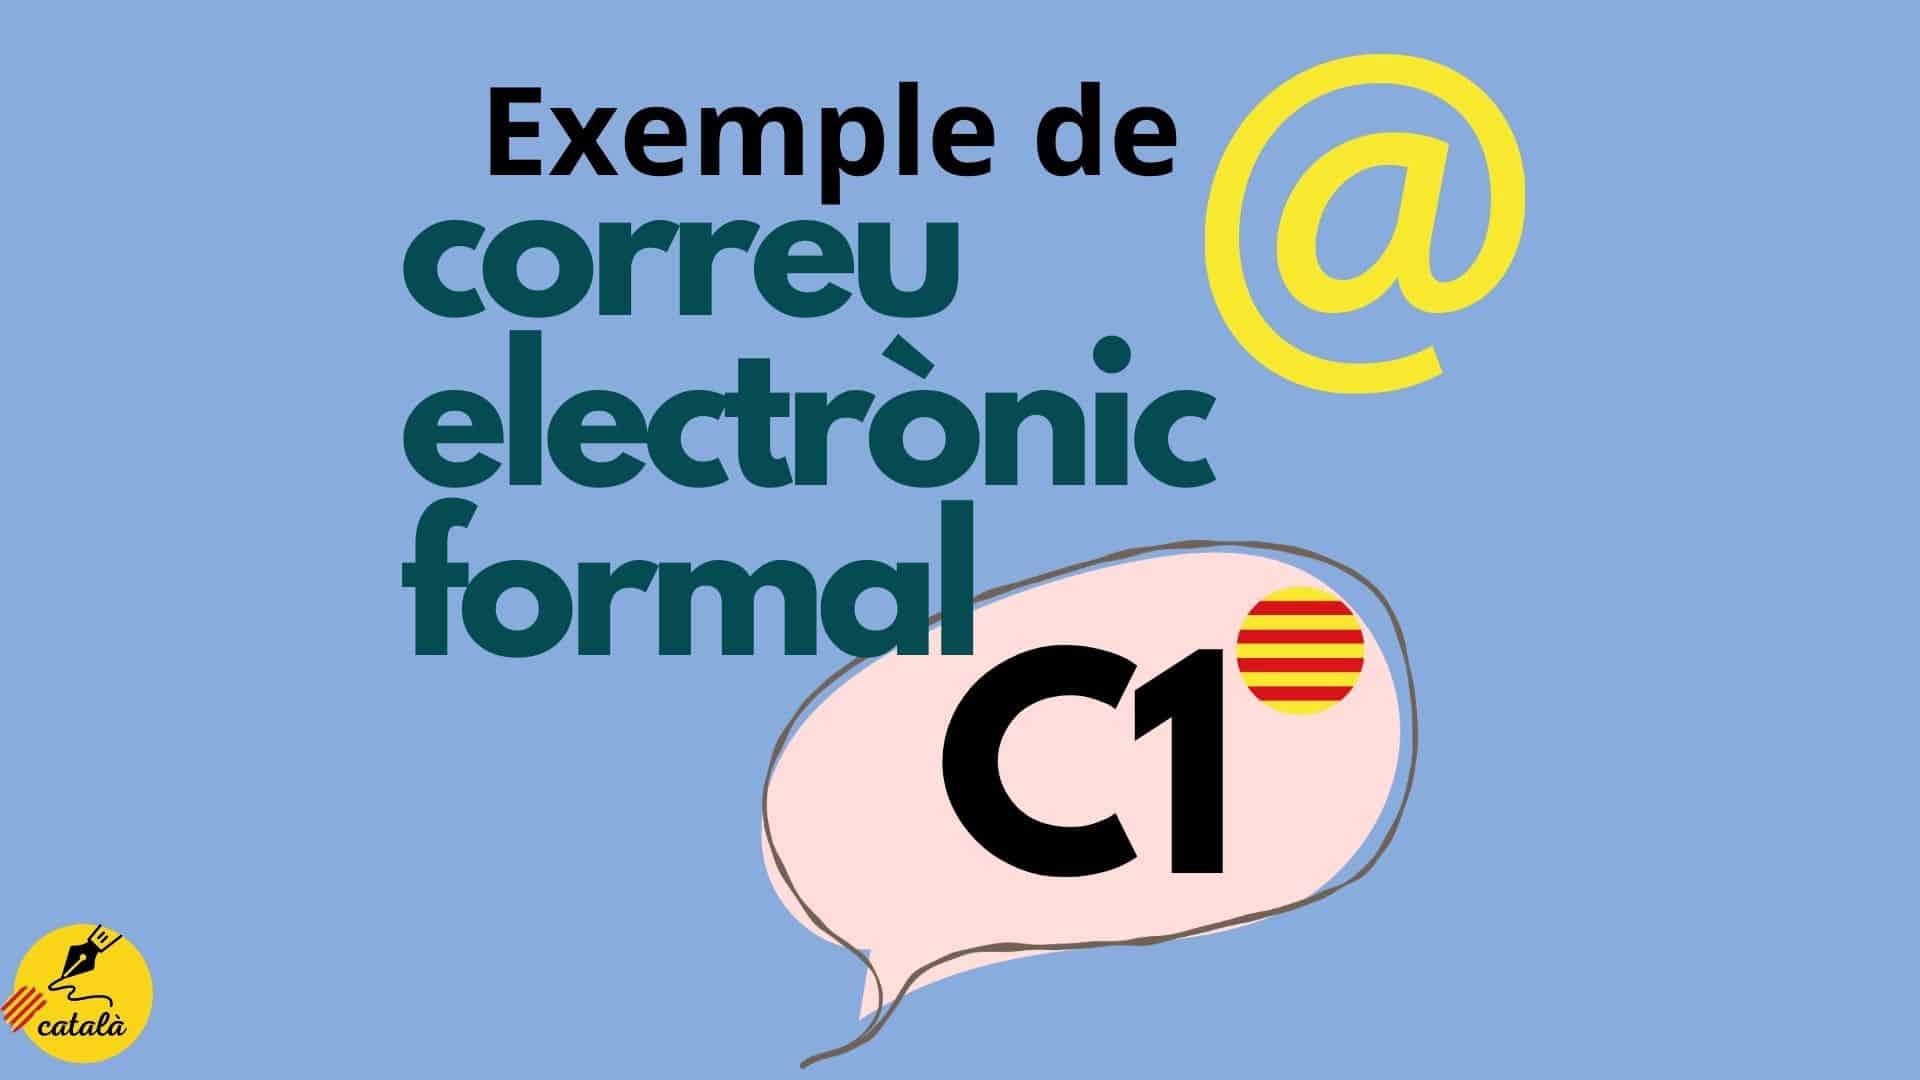 Exemple de CORREU electrònic FORMAL C1 de català